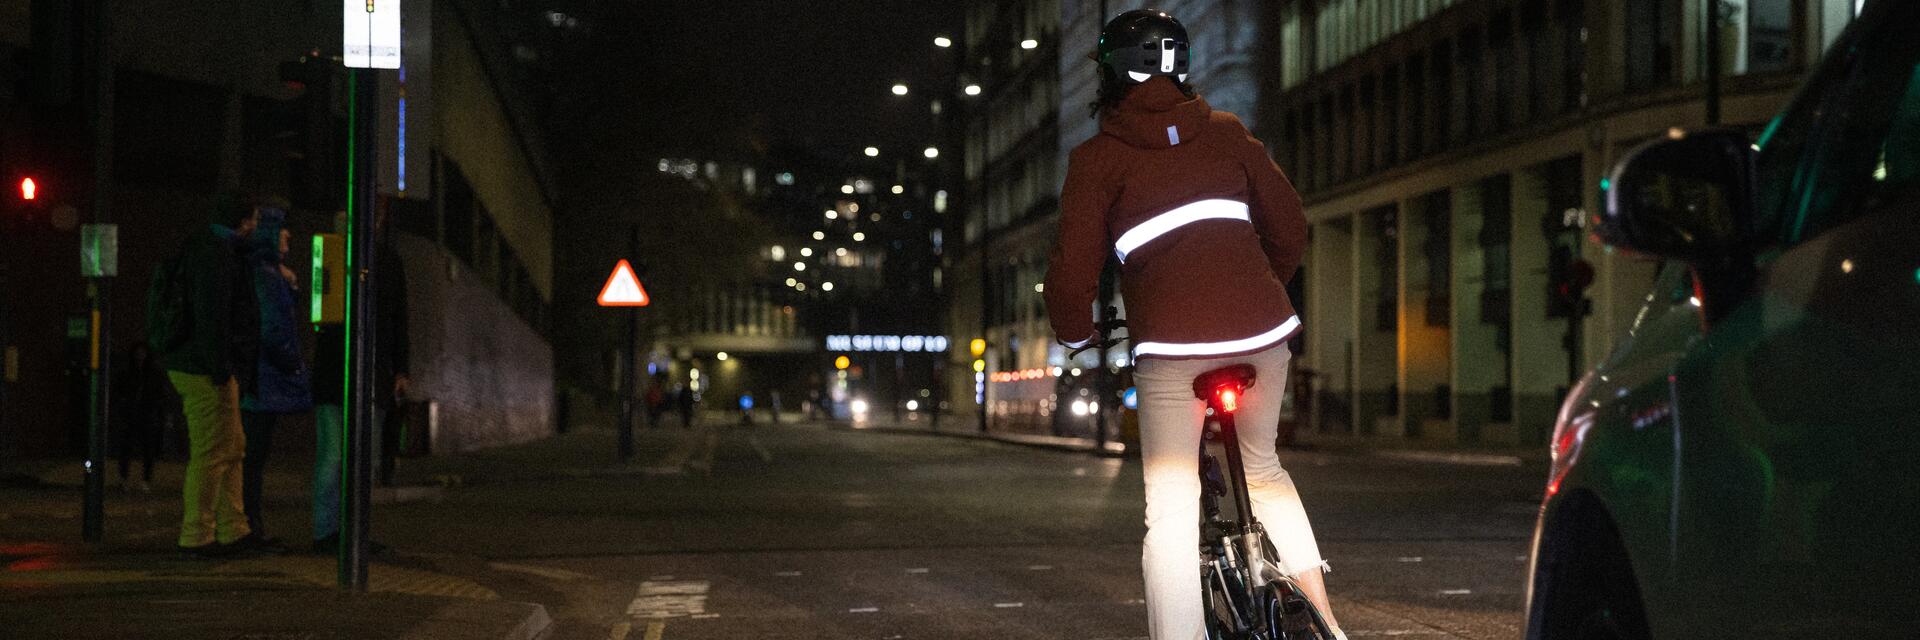 Kobieta jadąca na rowerze elektrycznym z włączonym tylnym oświetleniem